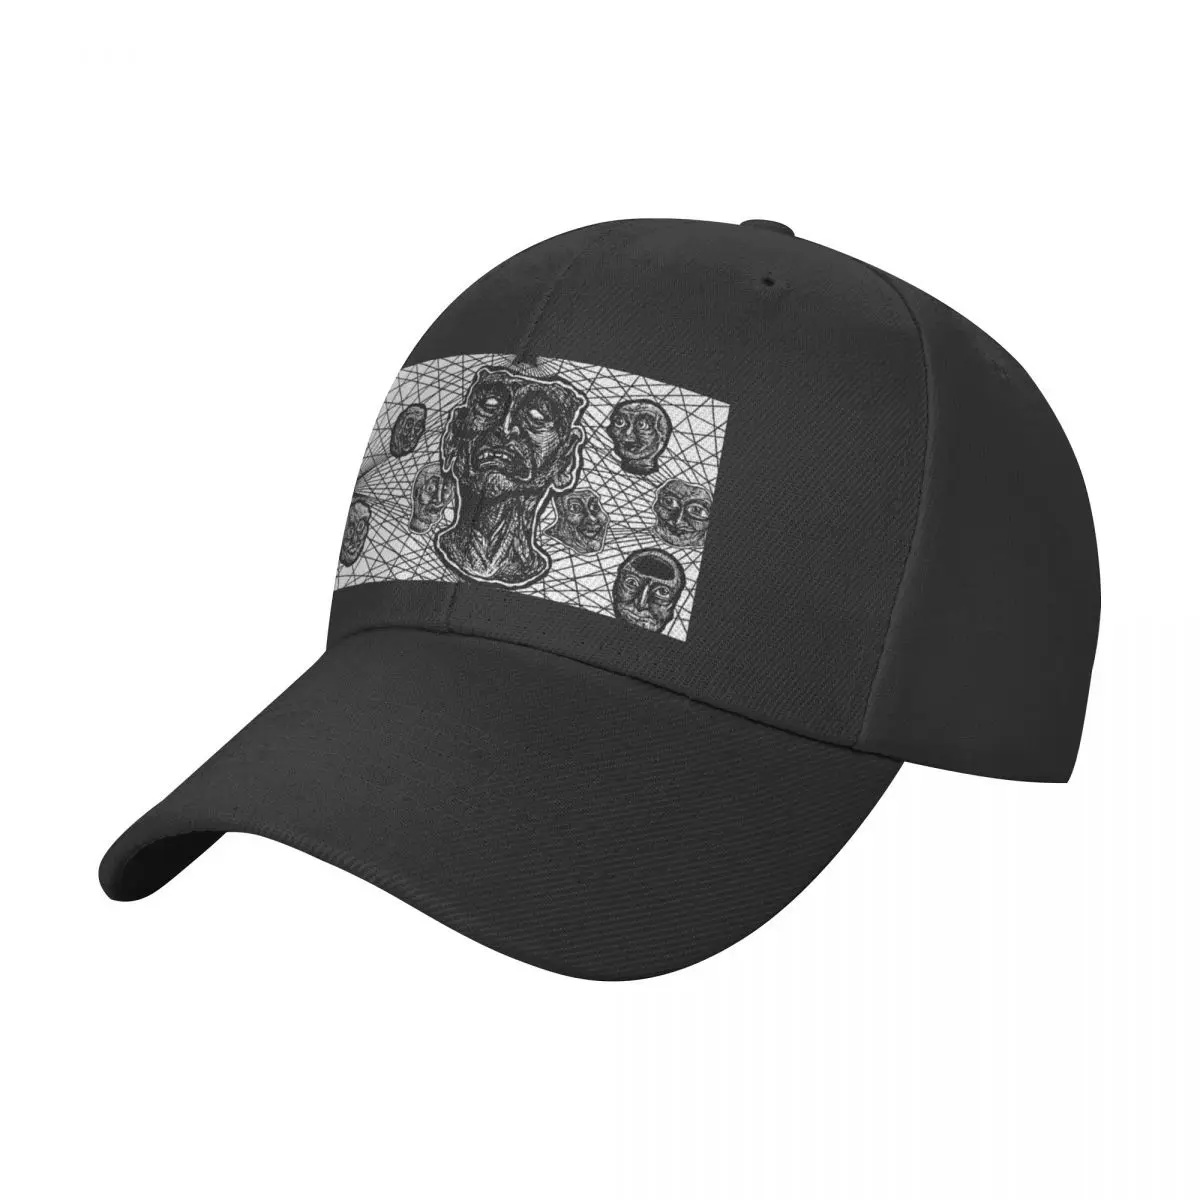 

TORUS WEB Baseball Cap Luxury Brand foam party Hat derby hat black Hats For Women Men's